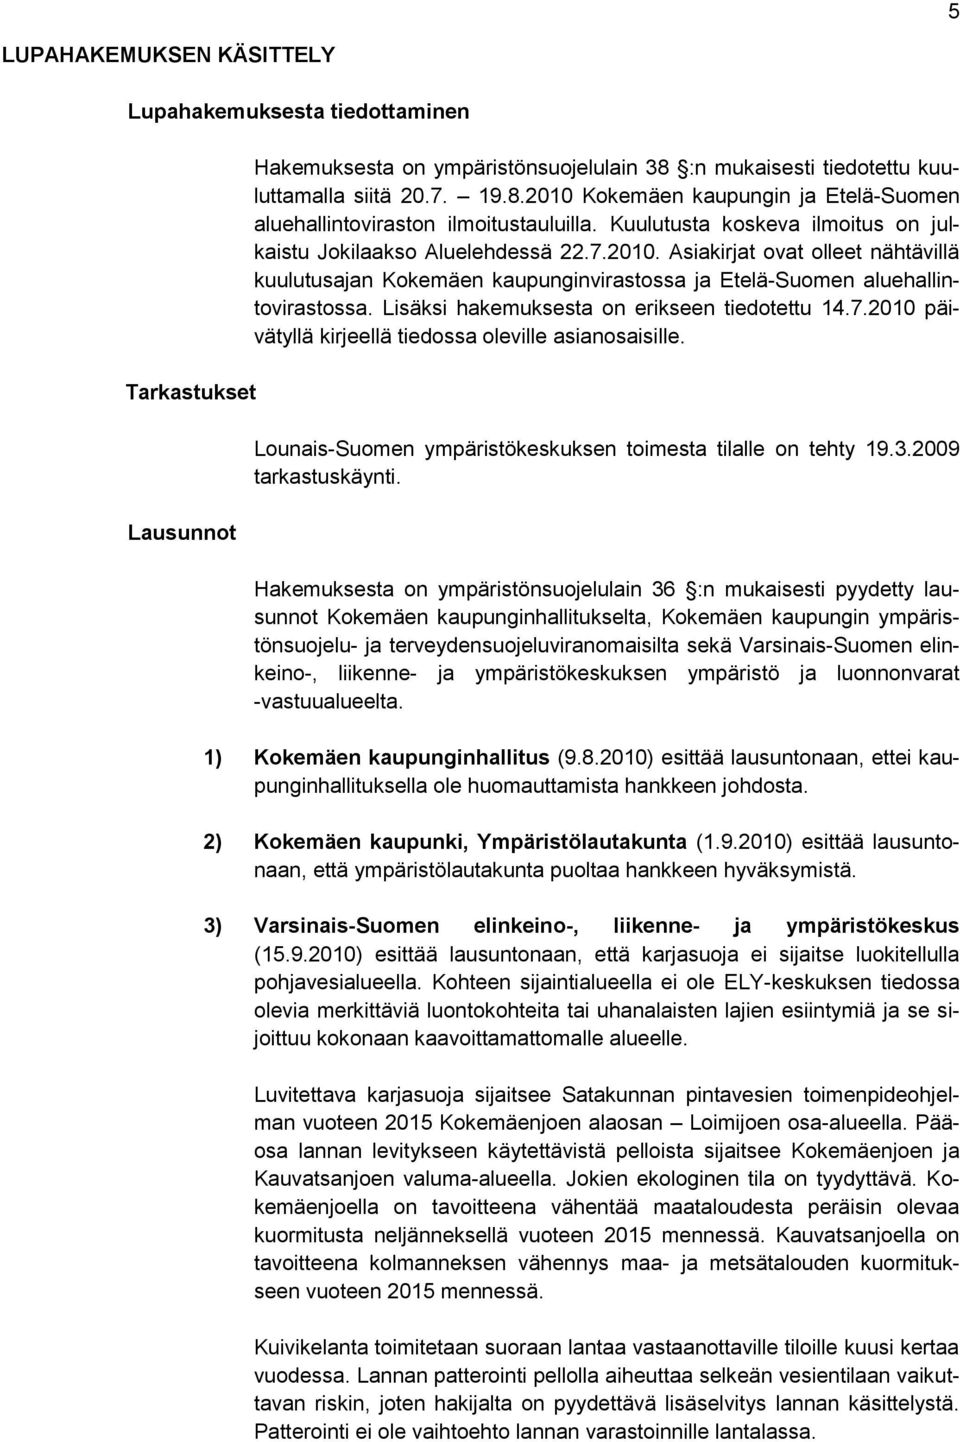 Kuulutusta koskeva ilmoitus on julkaistu Jokilaakso Aluelehdessä 22.7.2010. Asiakirjat ovat olleet nähtävillä kuulutusajan Kokemäen kaupunginvirastossa ja Etelä-Suomen aluehallintovirastossa.